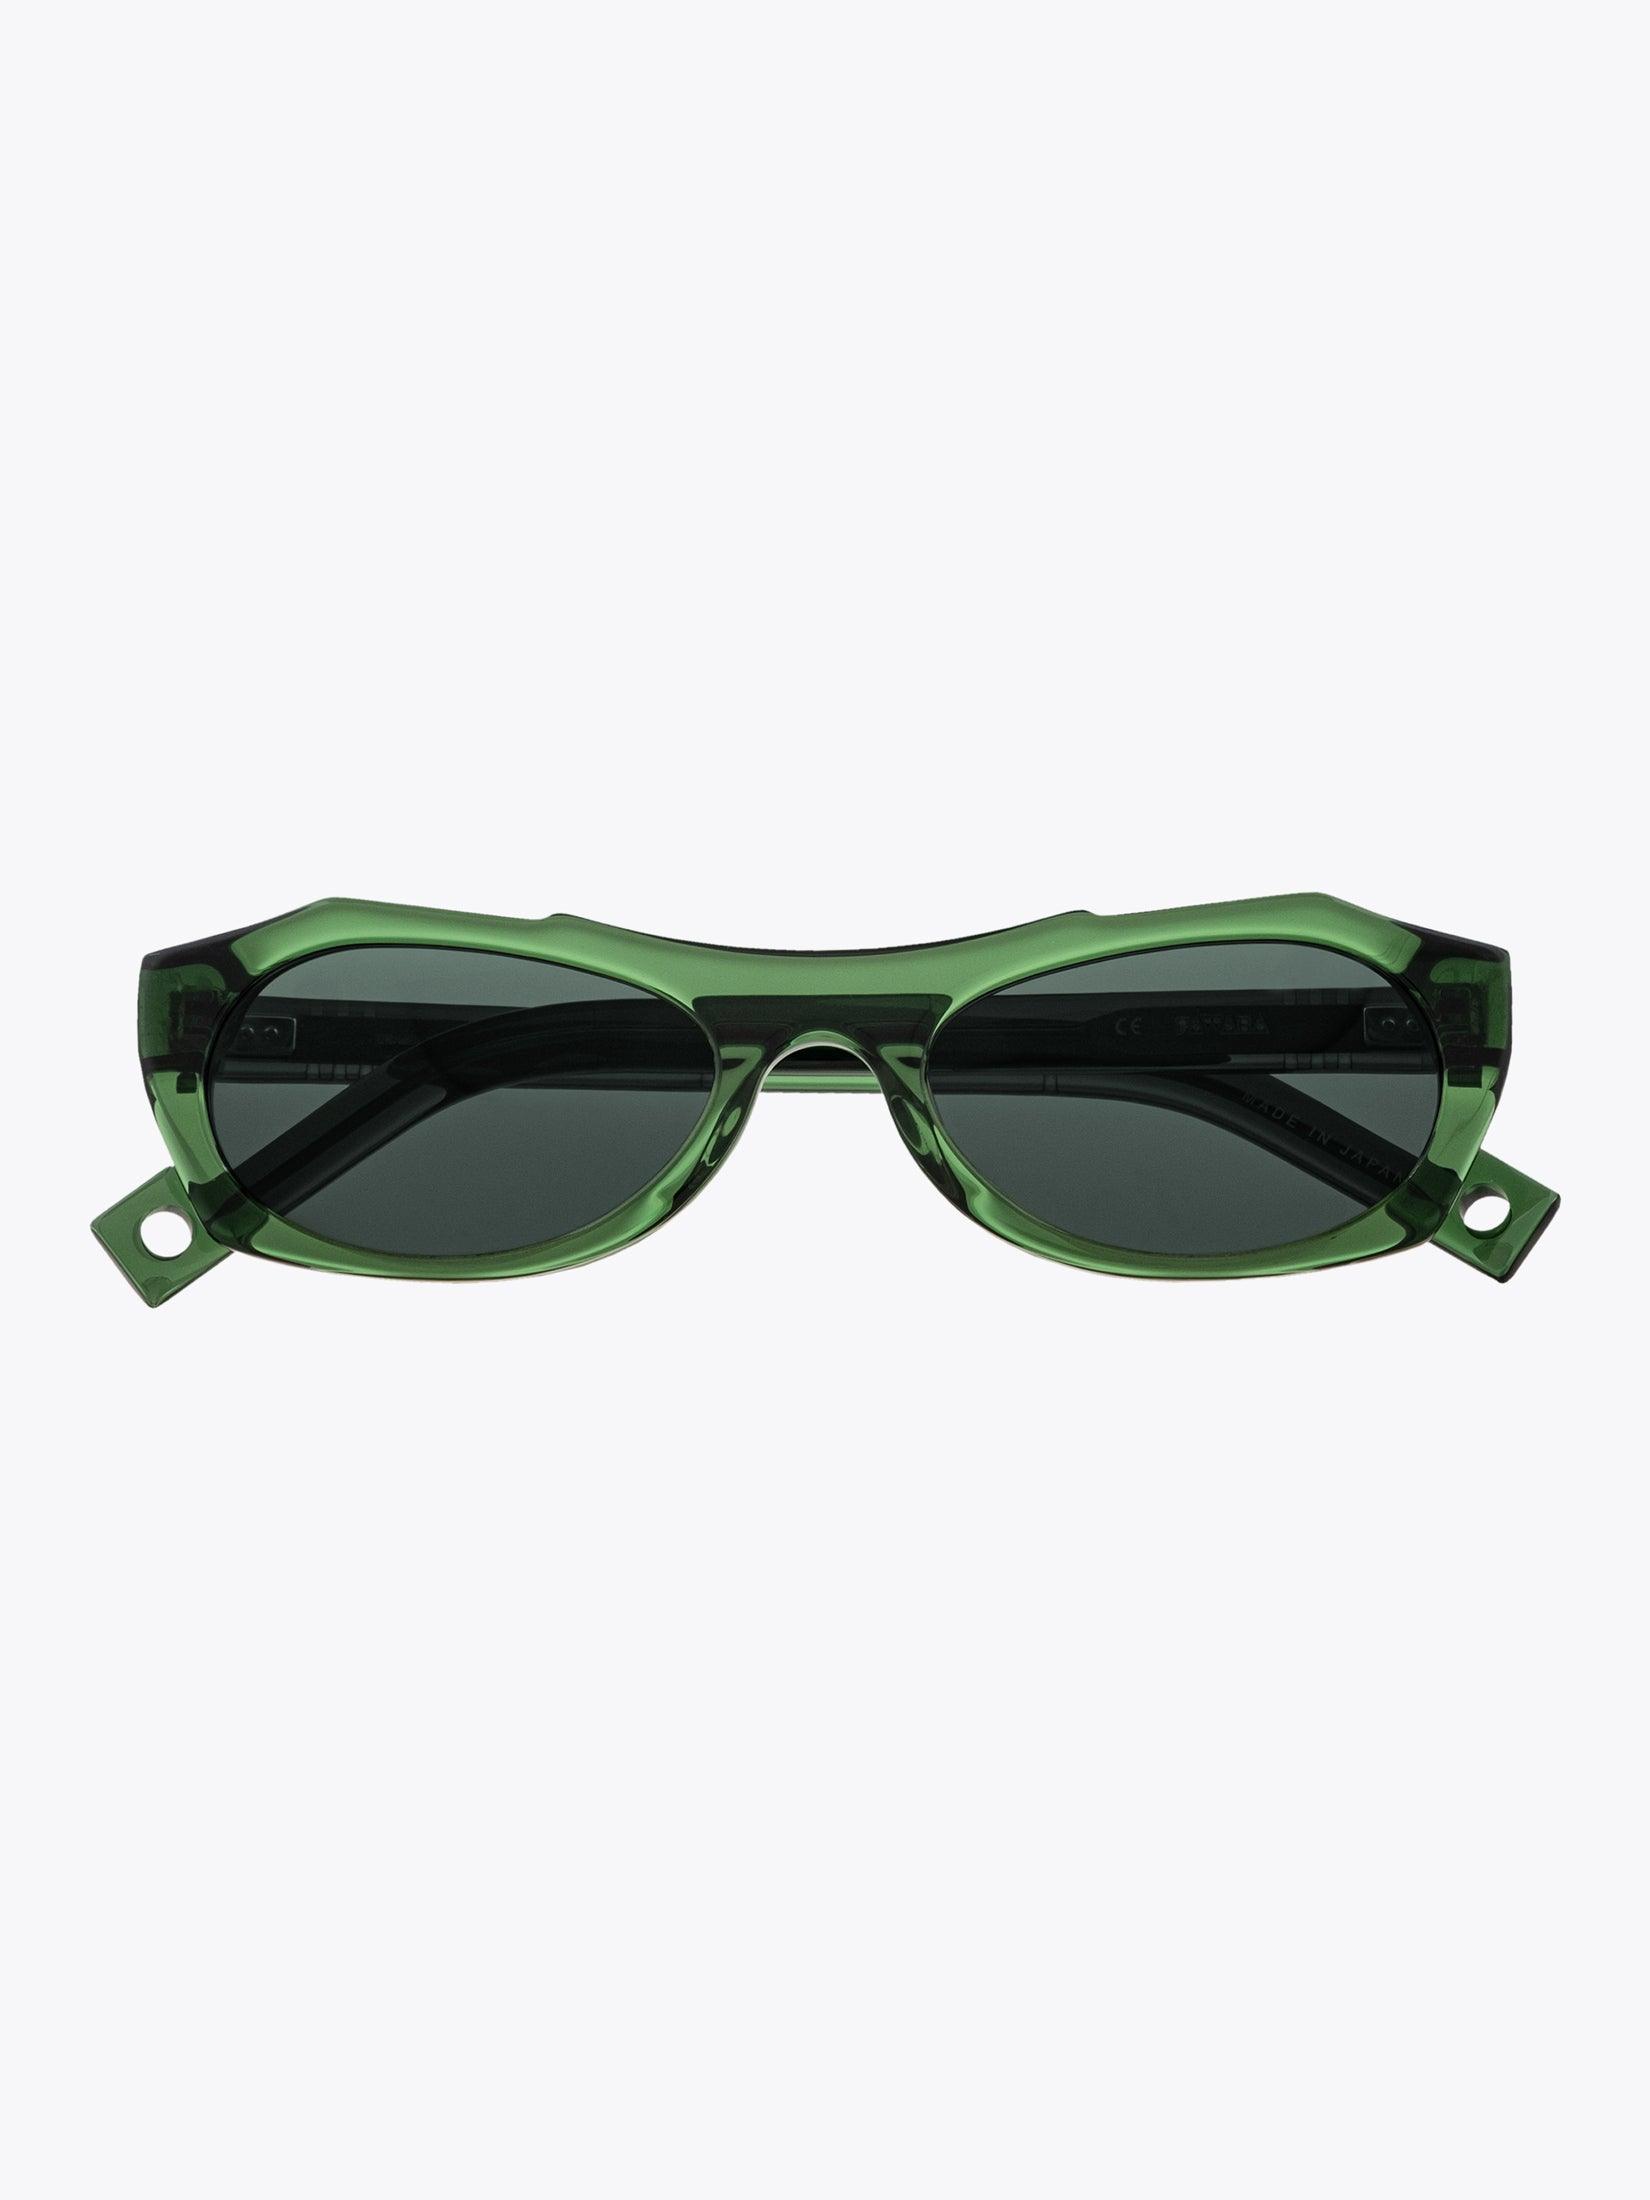 Pawaka Enambelas 16 Olive Sunglasses